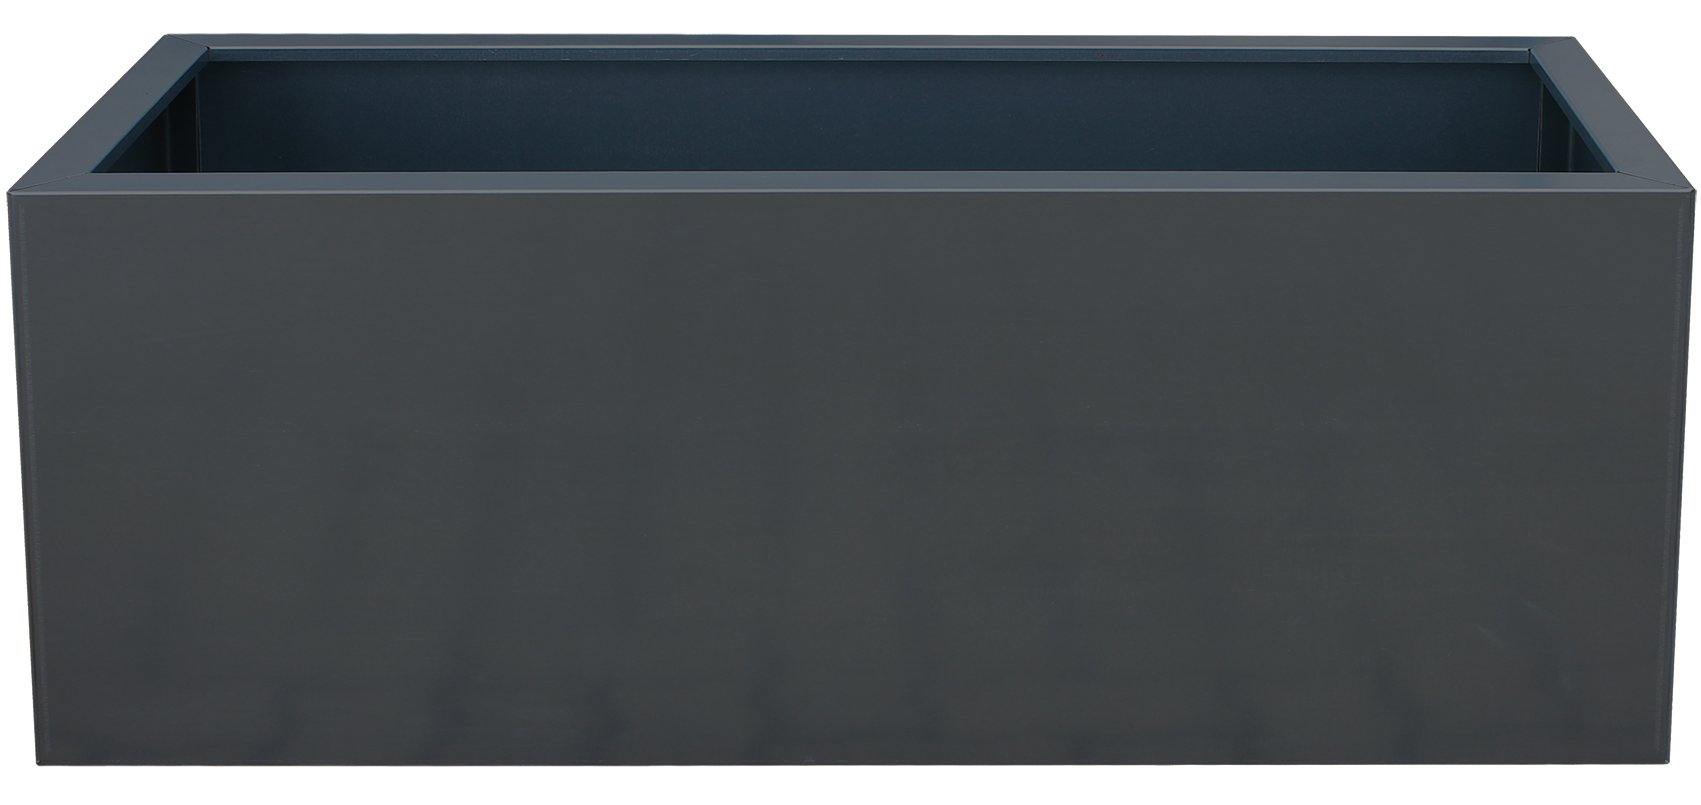 Palatino Exclusive Line Hochbeet/Pflanzkübel LOTTE aus verz. Stahl anthrazit 150 x 40, Höhe 50 cm, modular